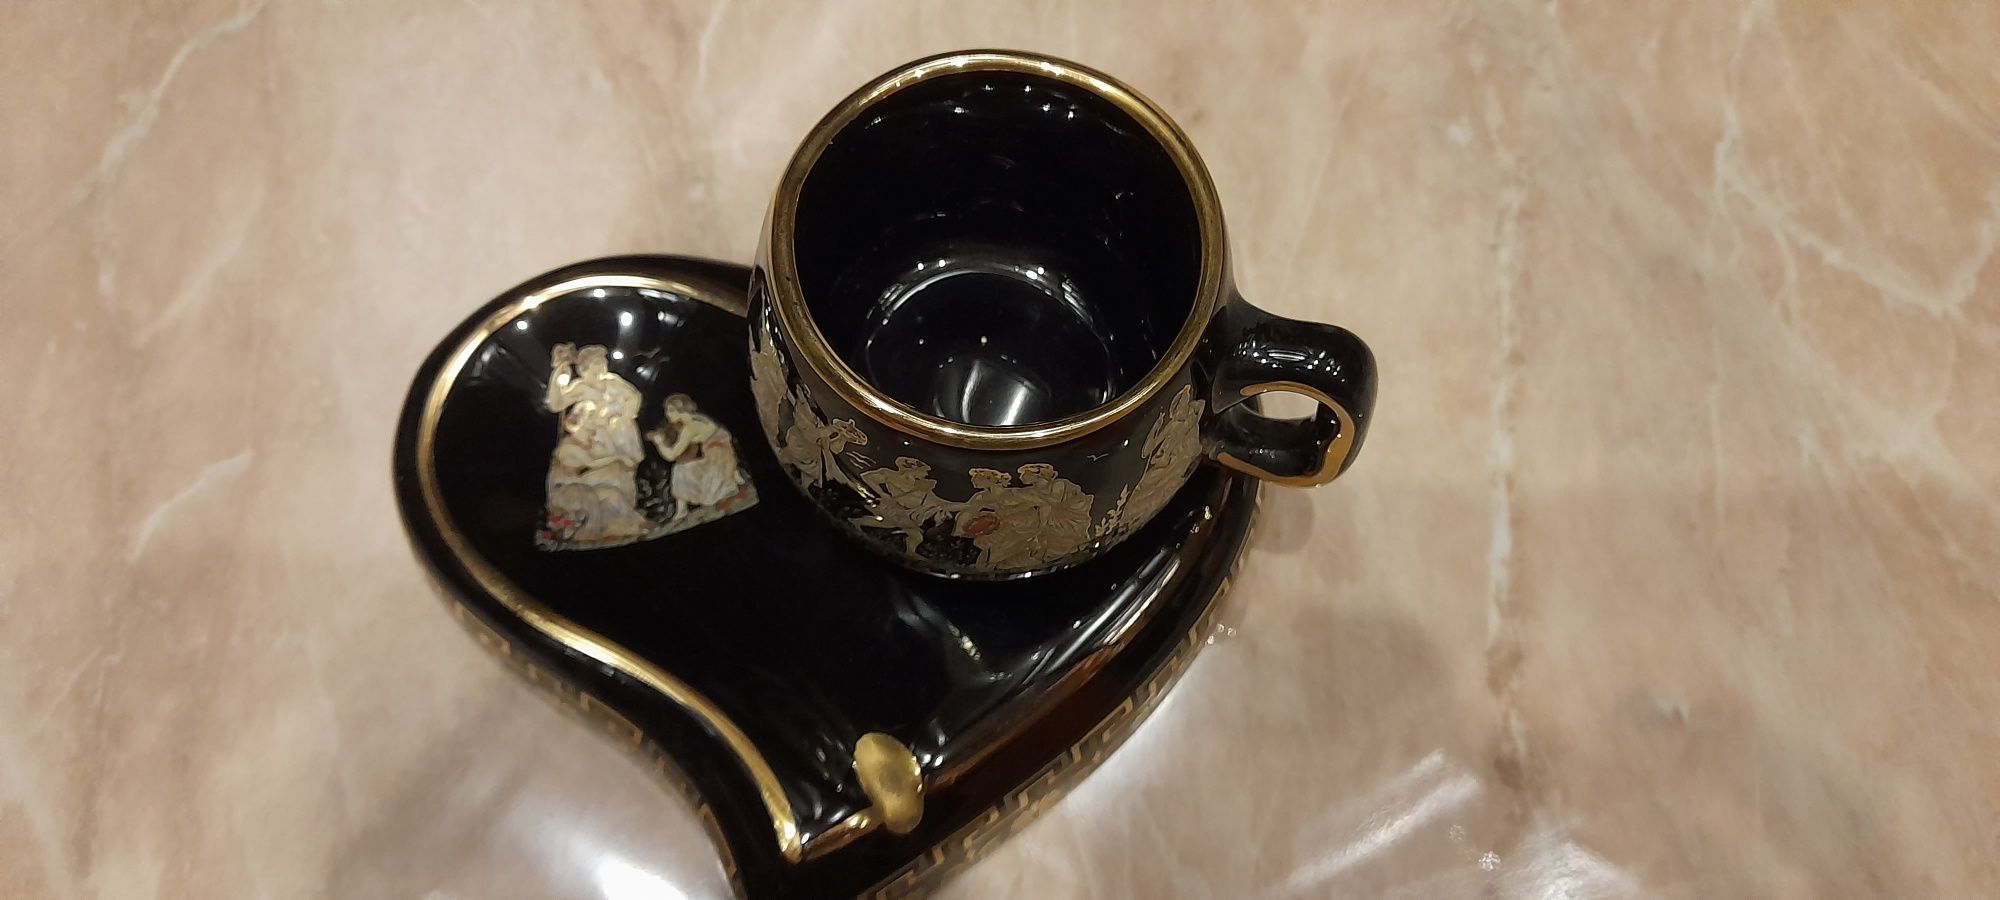 Чайник, Унікальній кофейний набор